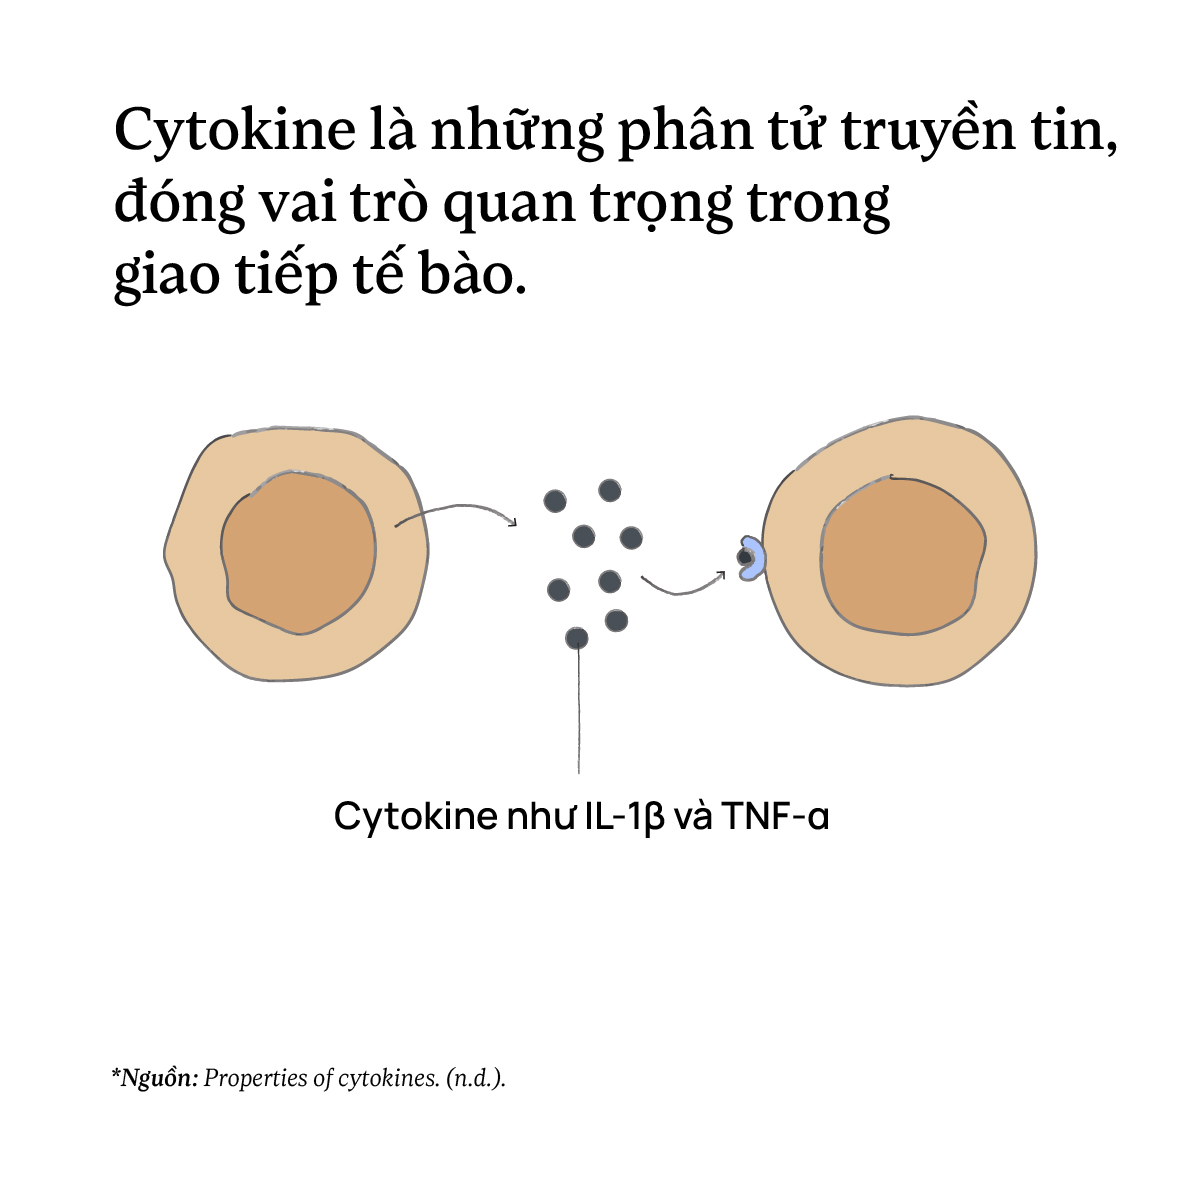 Cytokine là những phân tử truyền tin, đóng vai trò quan trọng trong giao tiếp tế bào